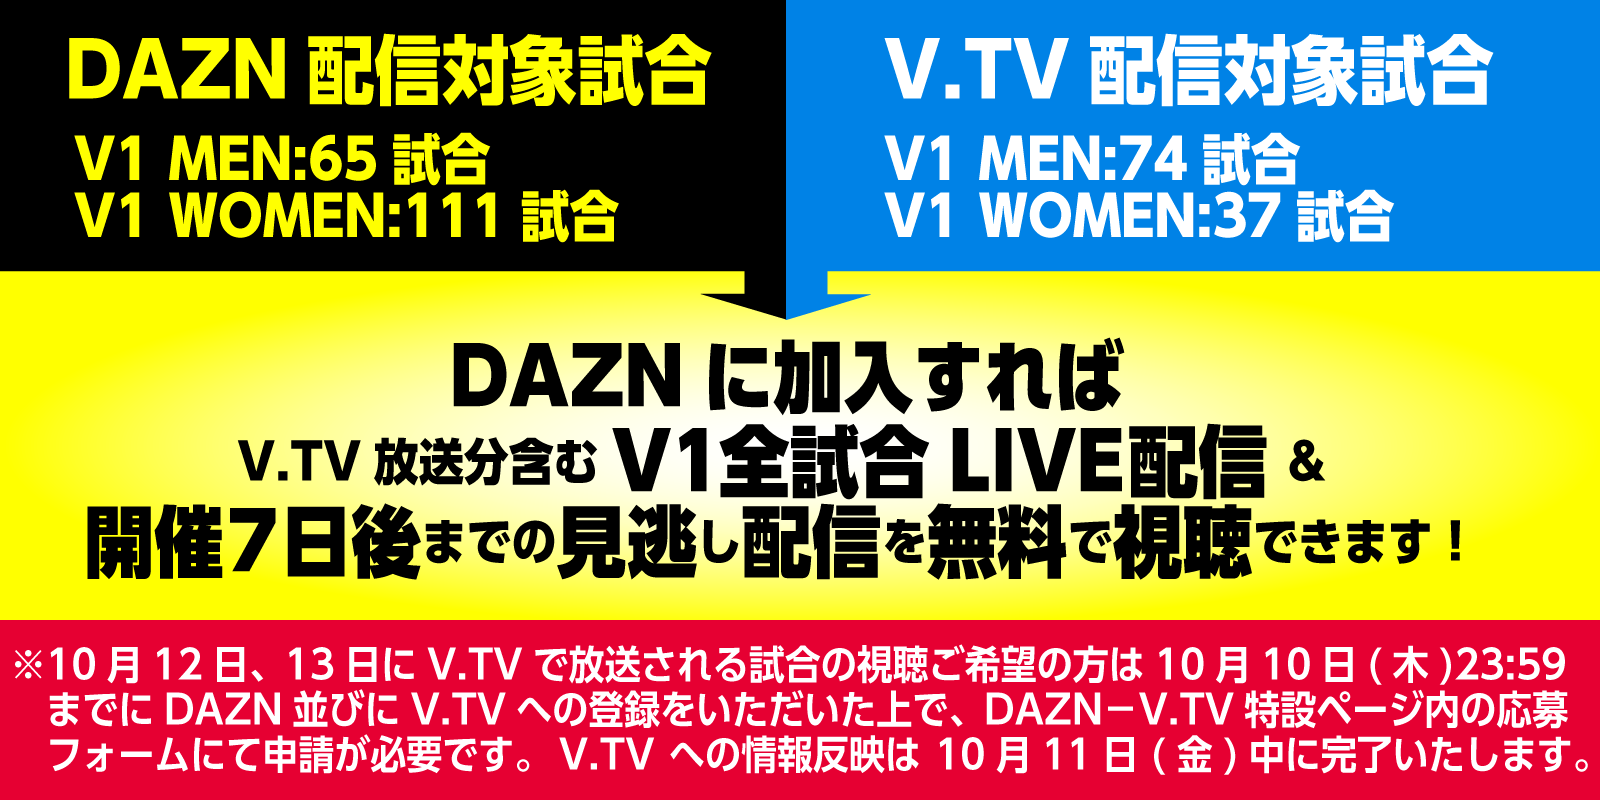 バレー Vリーグ Daznに加入すれば V Tv放送分のv1の試合が無料で視聴可能 Vリーグ機構のプレスリリース